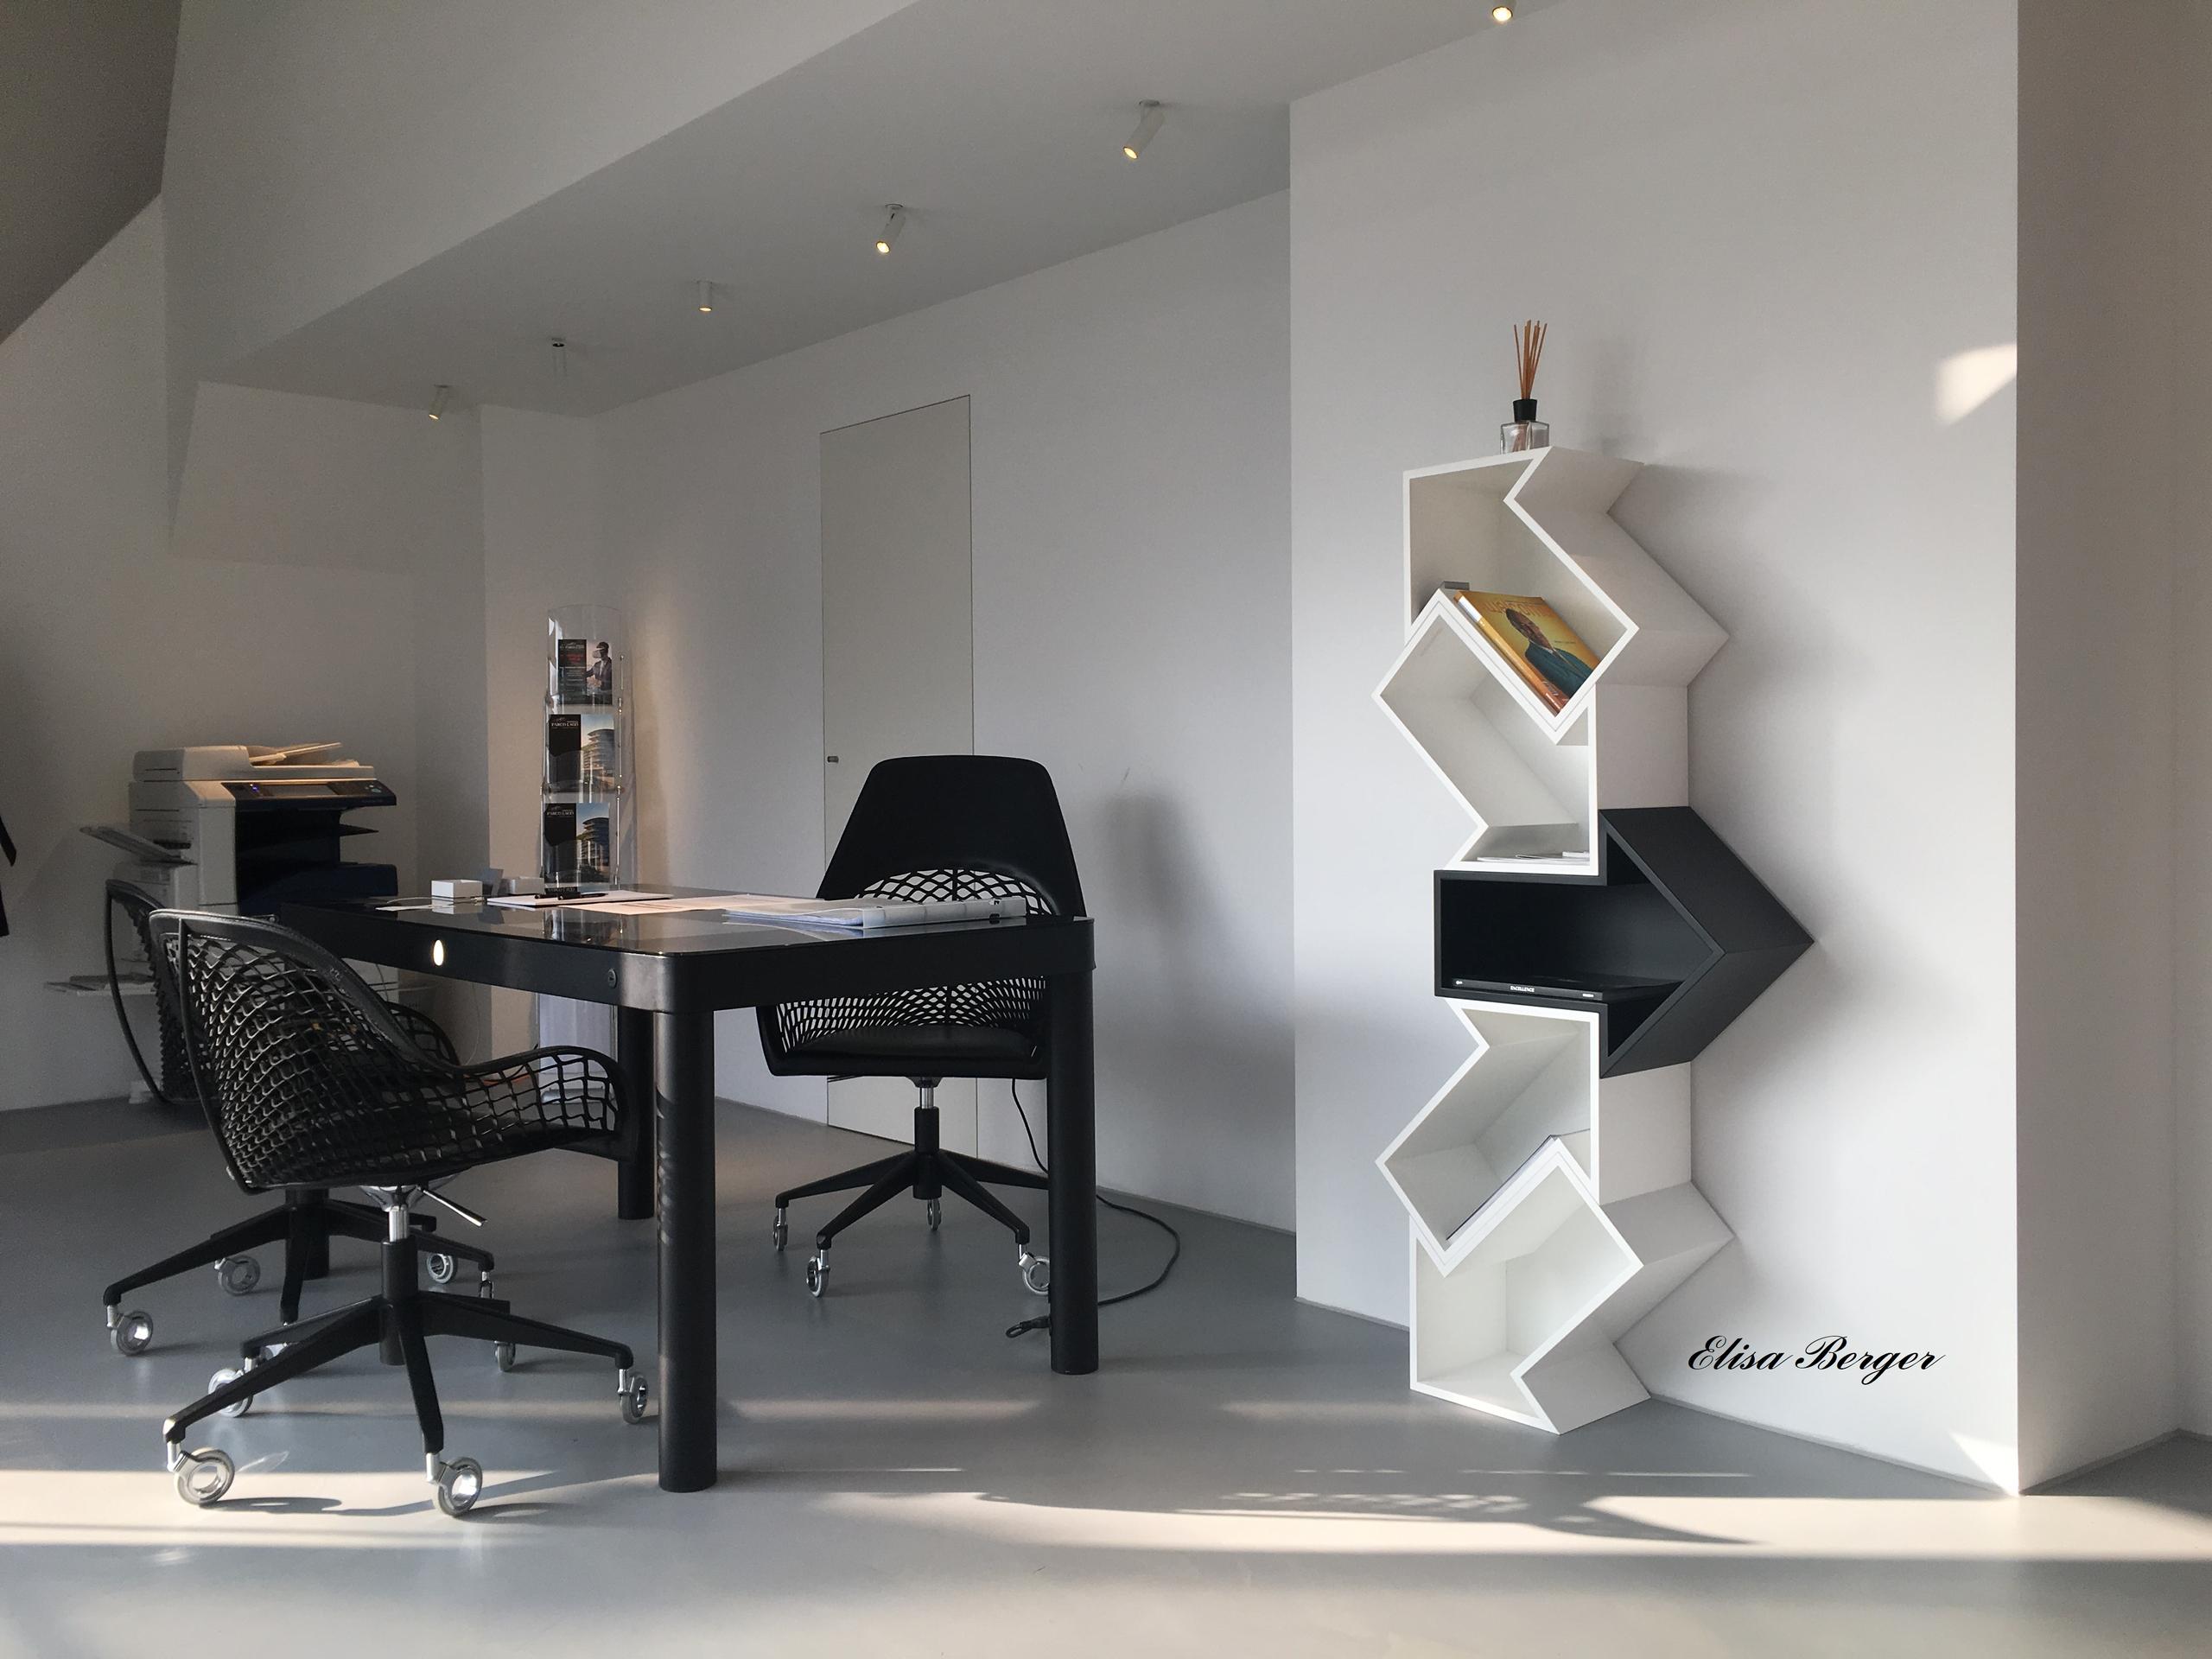 Renzetti Partners + Libreria Electra Elisa Berger Interior Design Studio Lugano, libreria scaffalatura in legno componibile modulare, negozio arredamento, modular shelf wood, home decor,